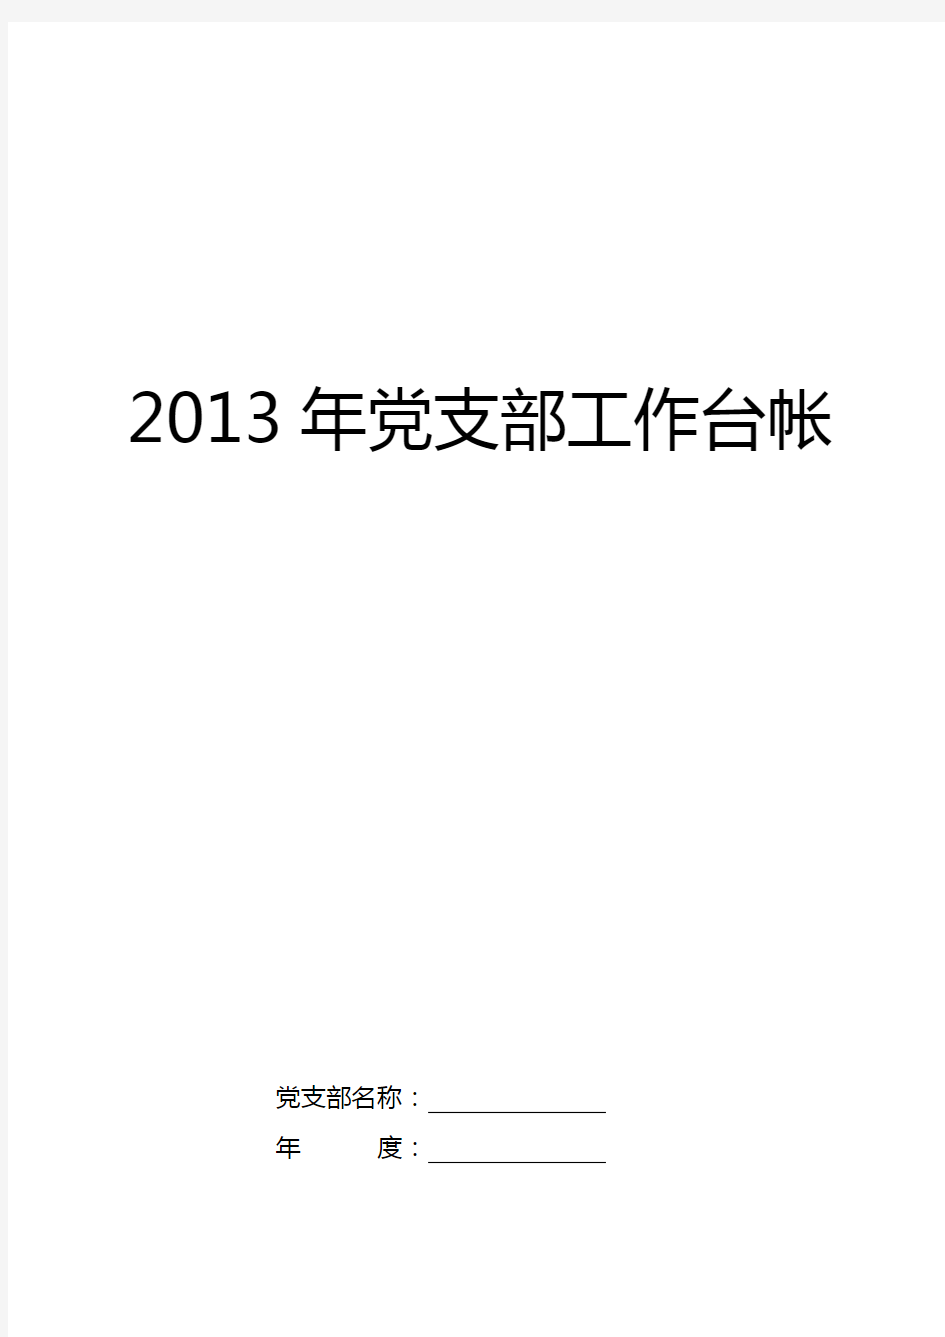 2020年(工作规范)年党支部工作台账记录手册